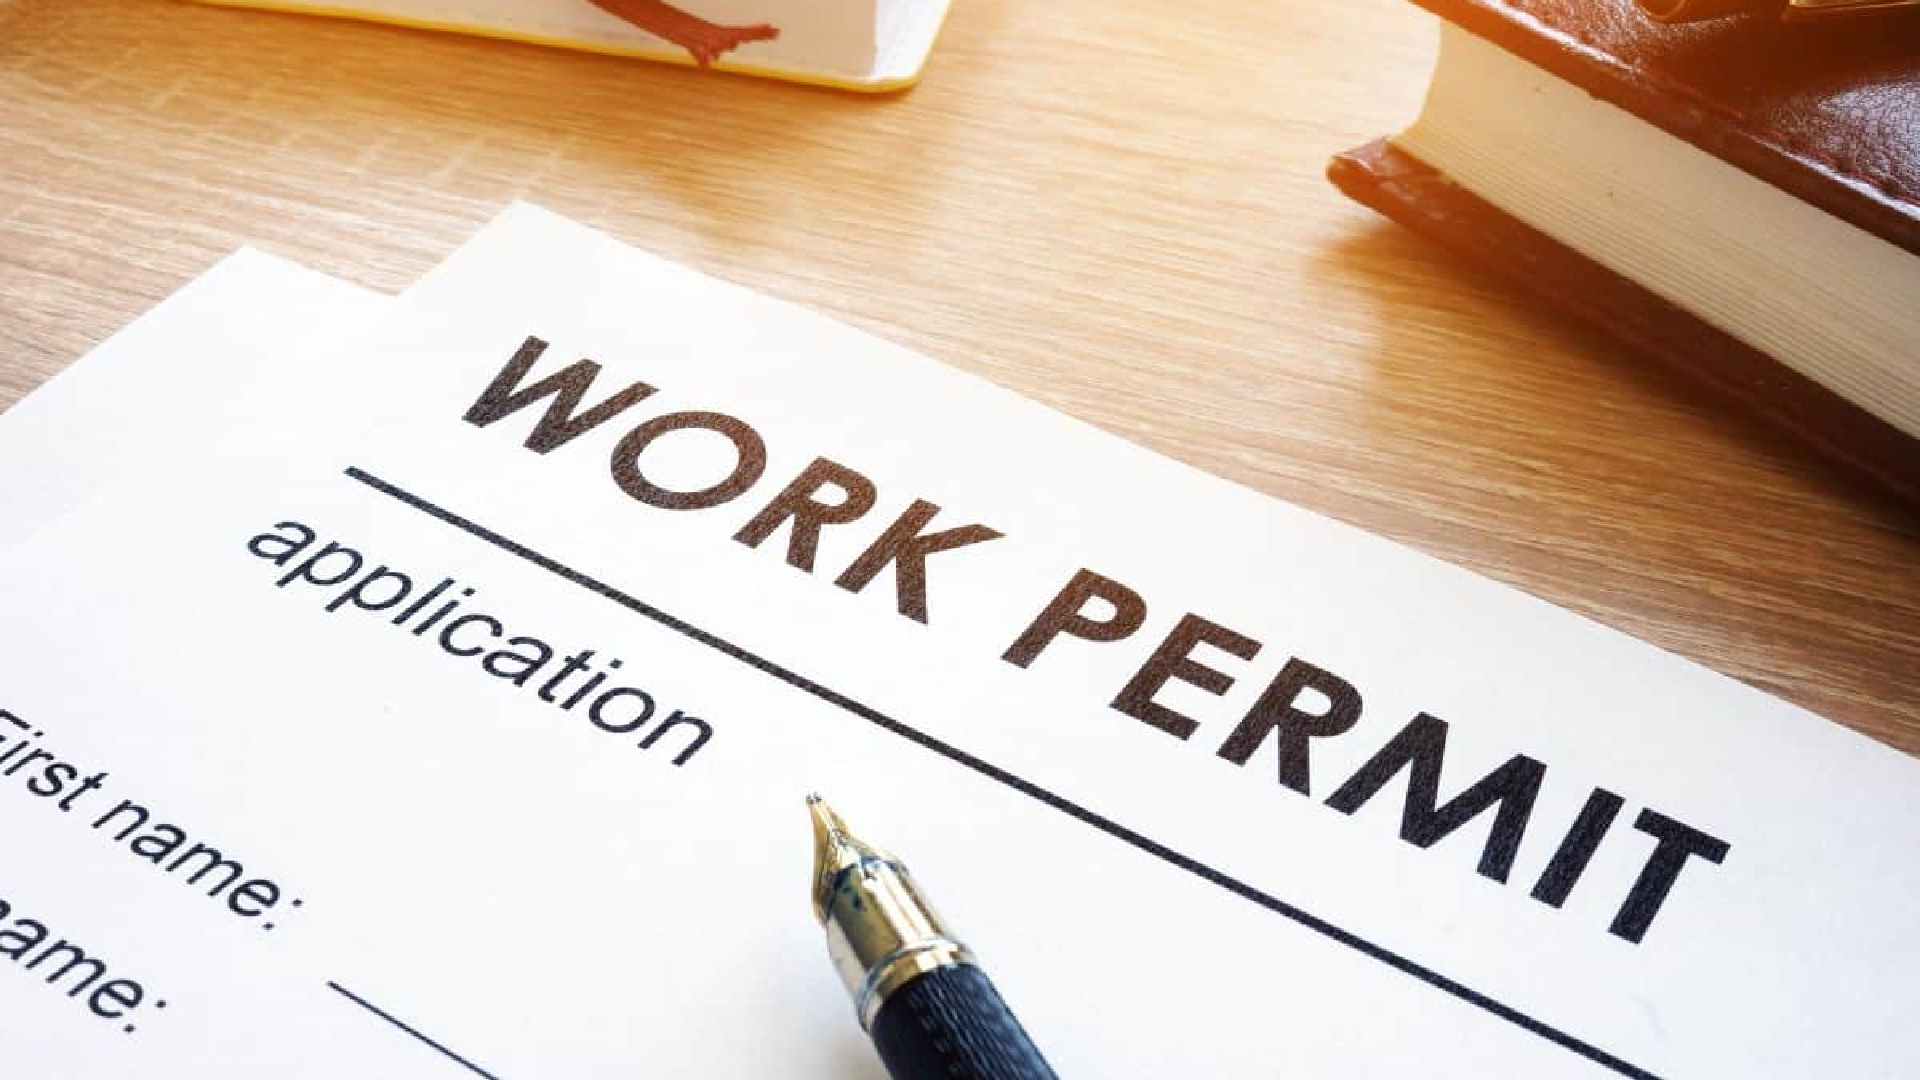 mohre work permit status 